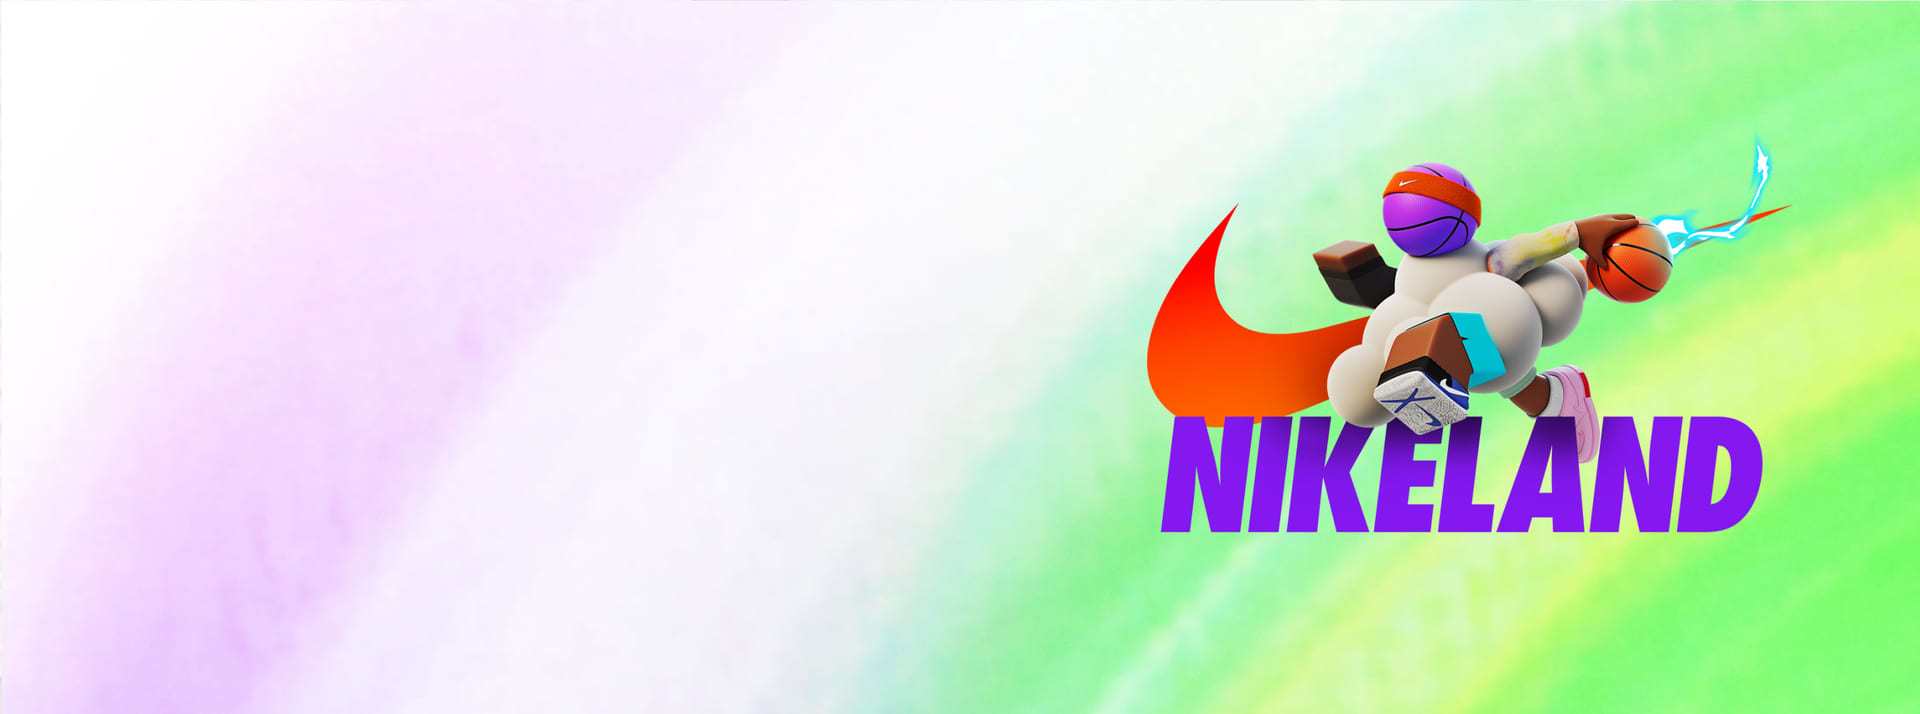 NIKELAND Roblox Metaverse NFT Kids' Game